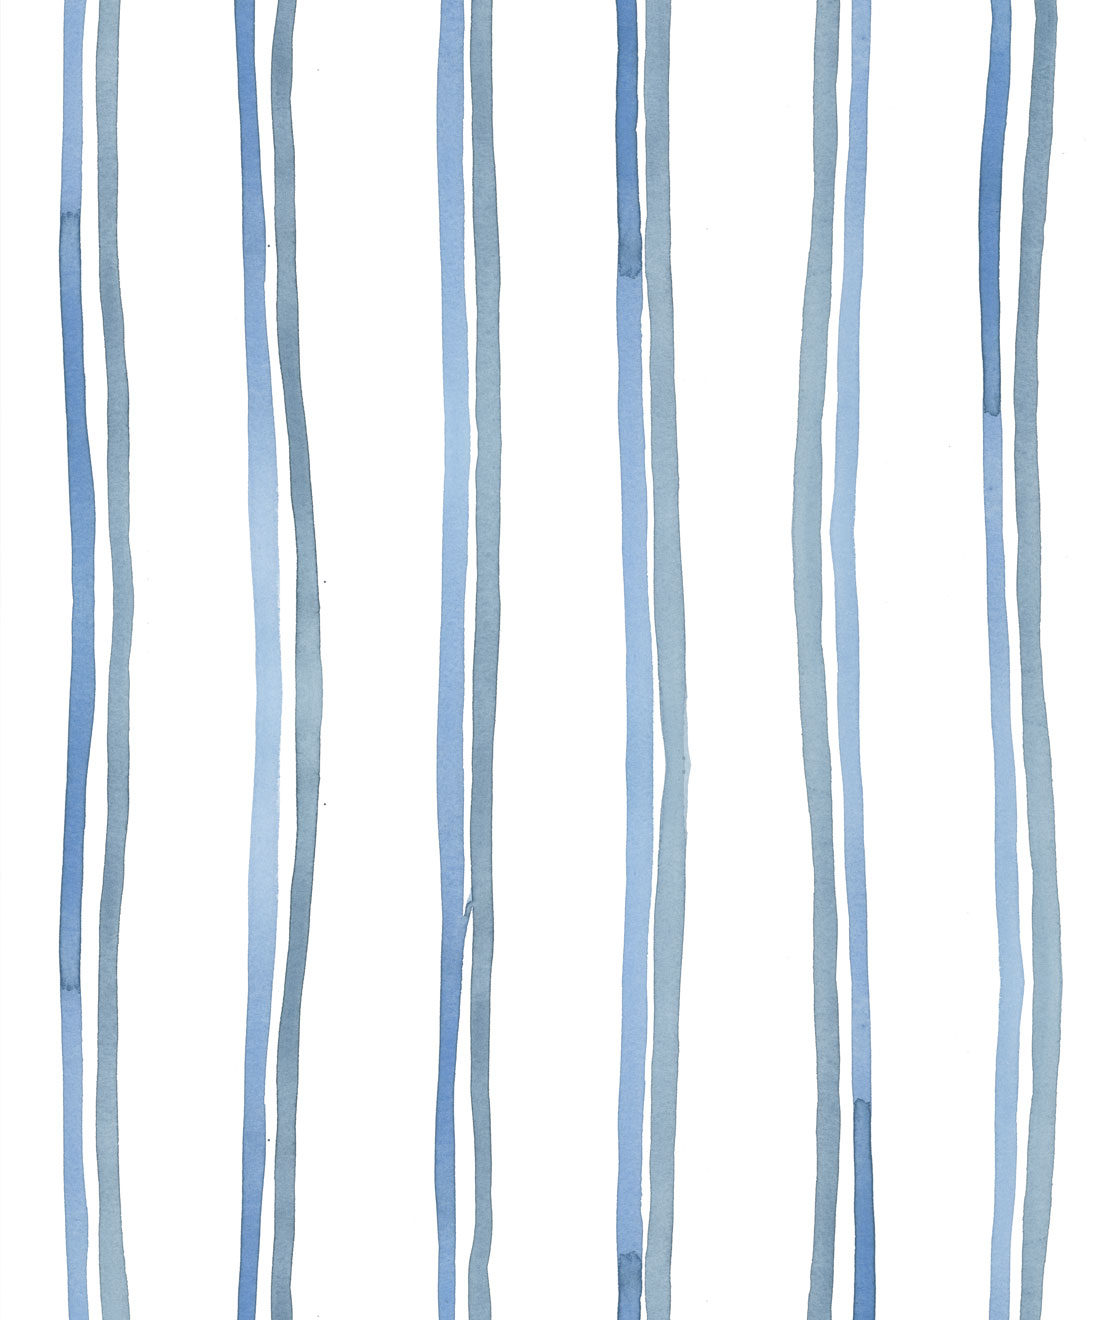 Double Inky Stripe • Striped Wallpaper • Blue Striped Design • Georgia MacMillan • Milton & King Europe